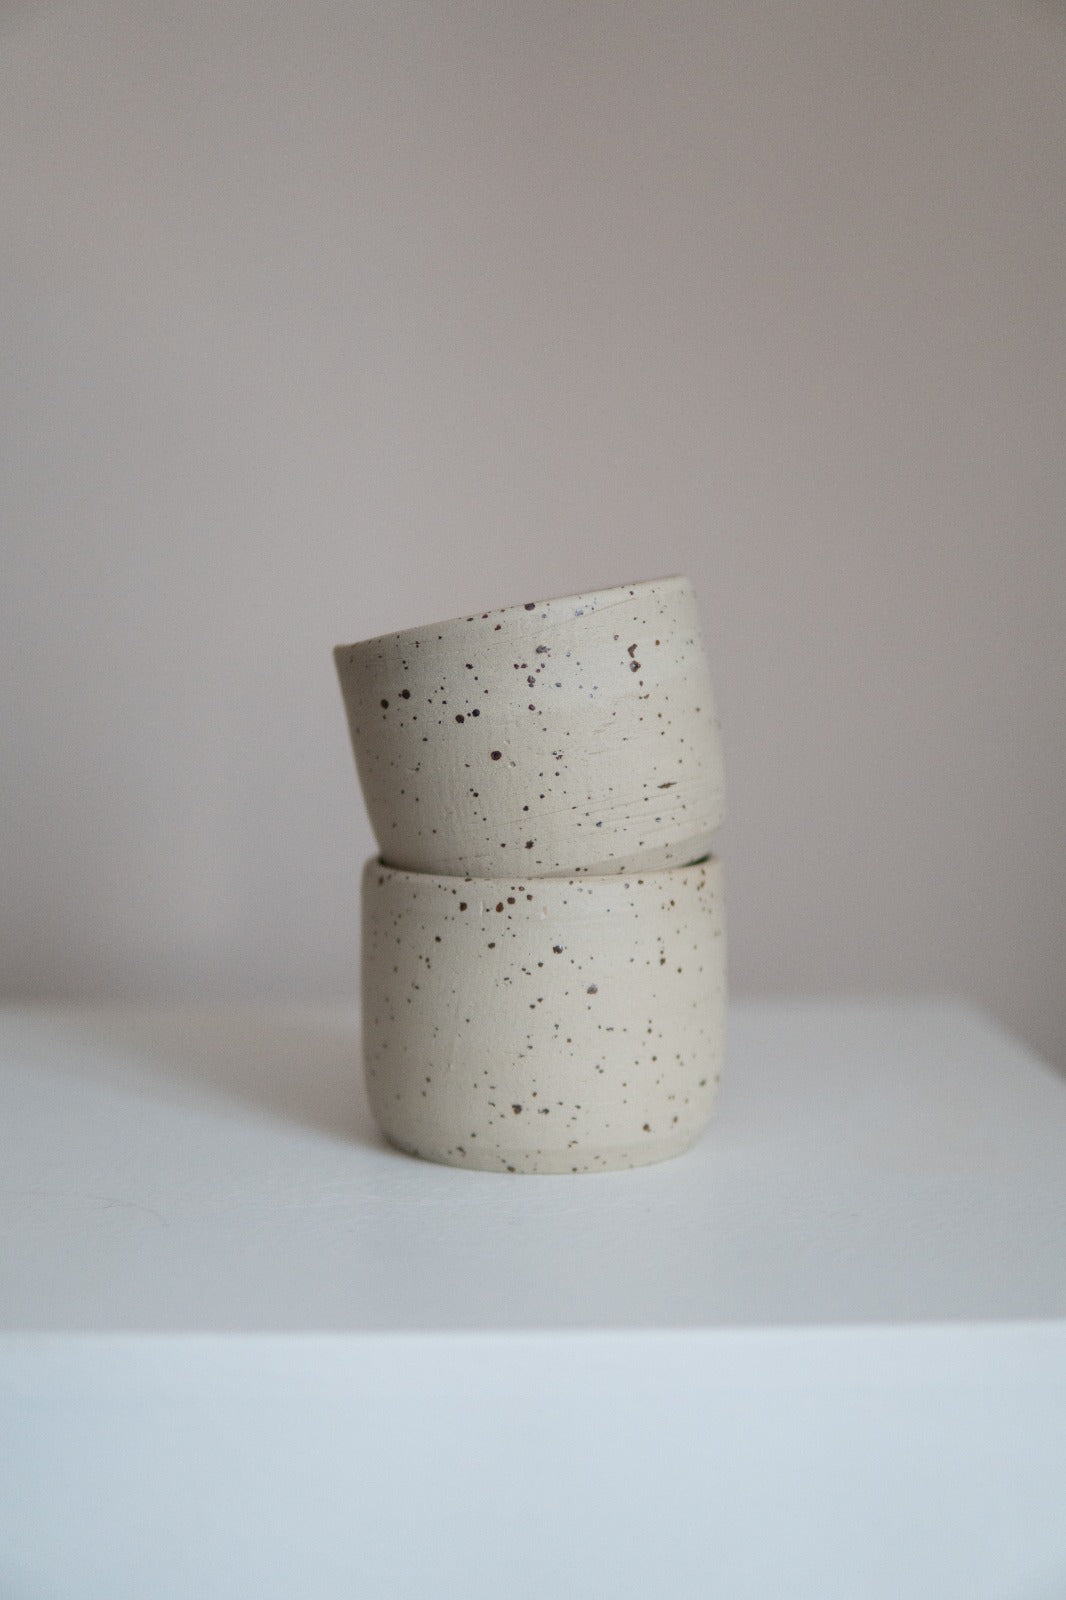 Speckled Stoneware Beige Mugs (2 pieces)